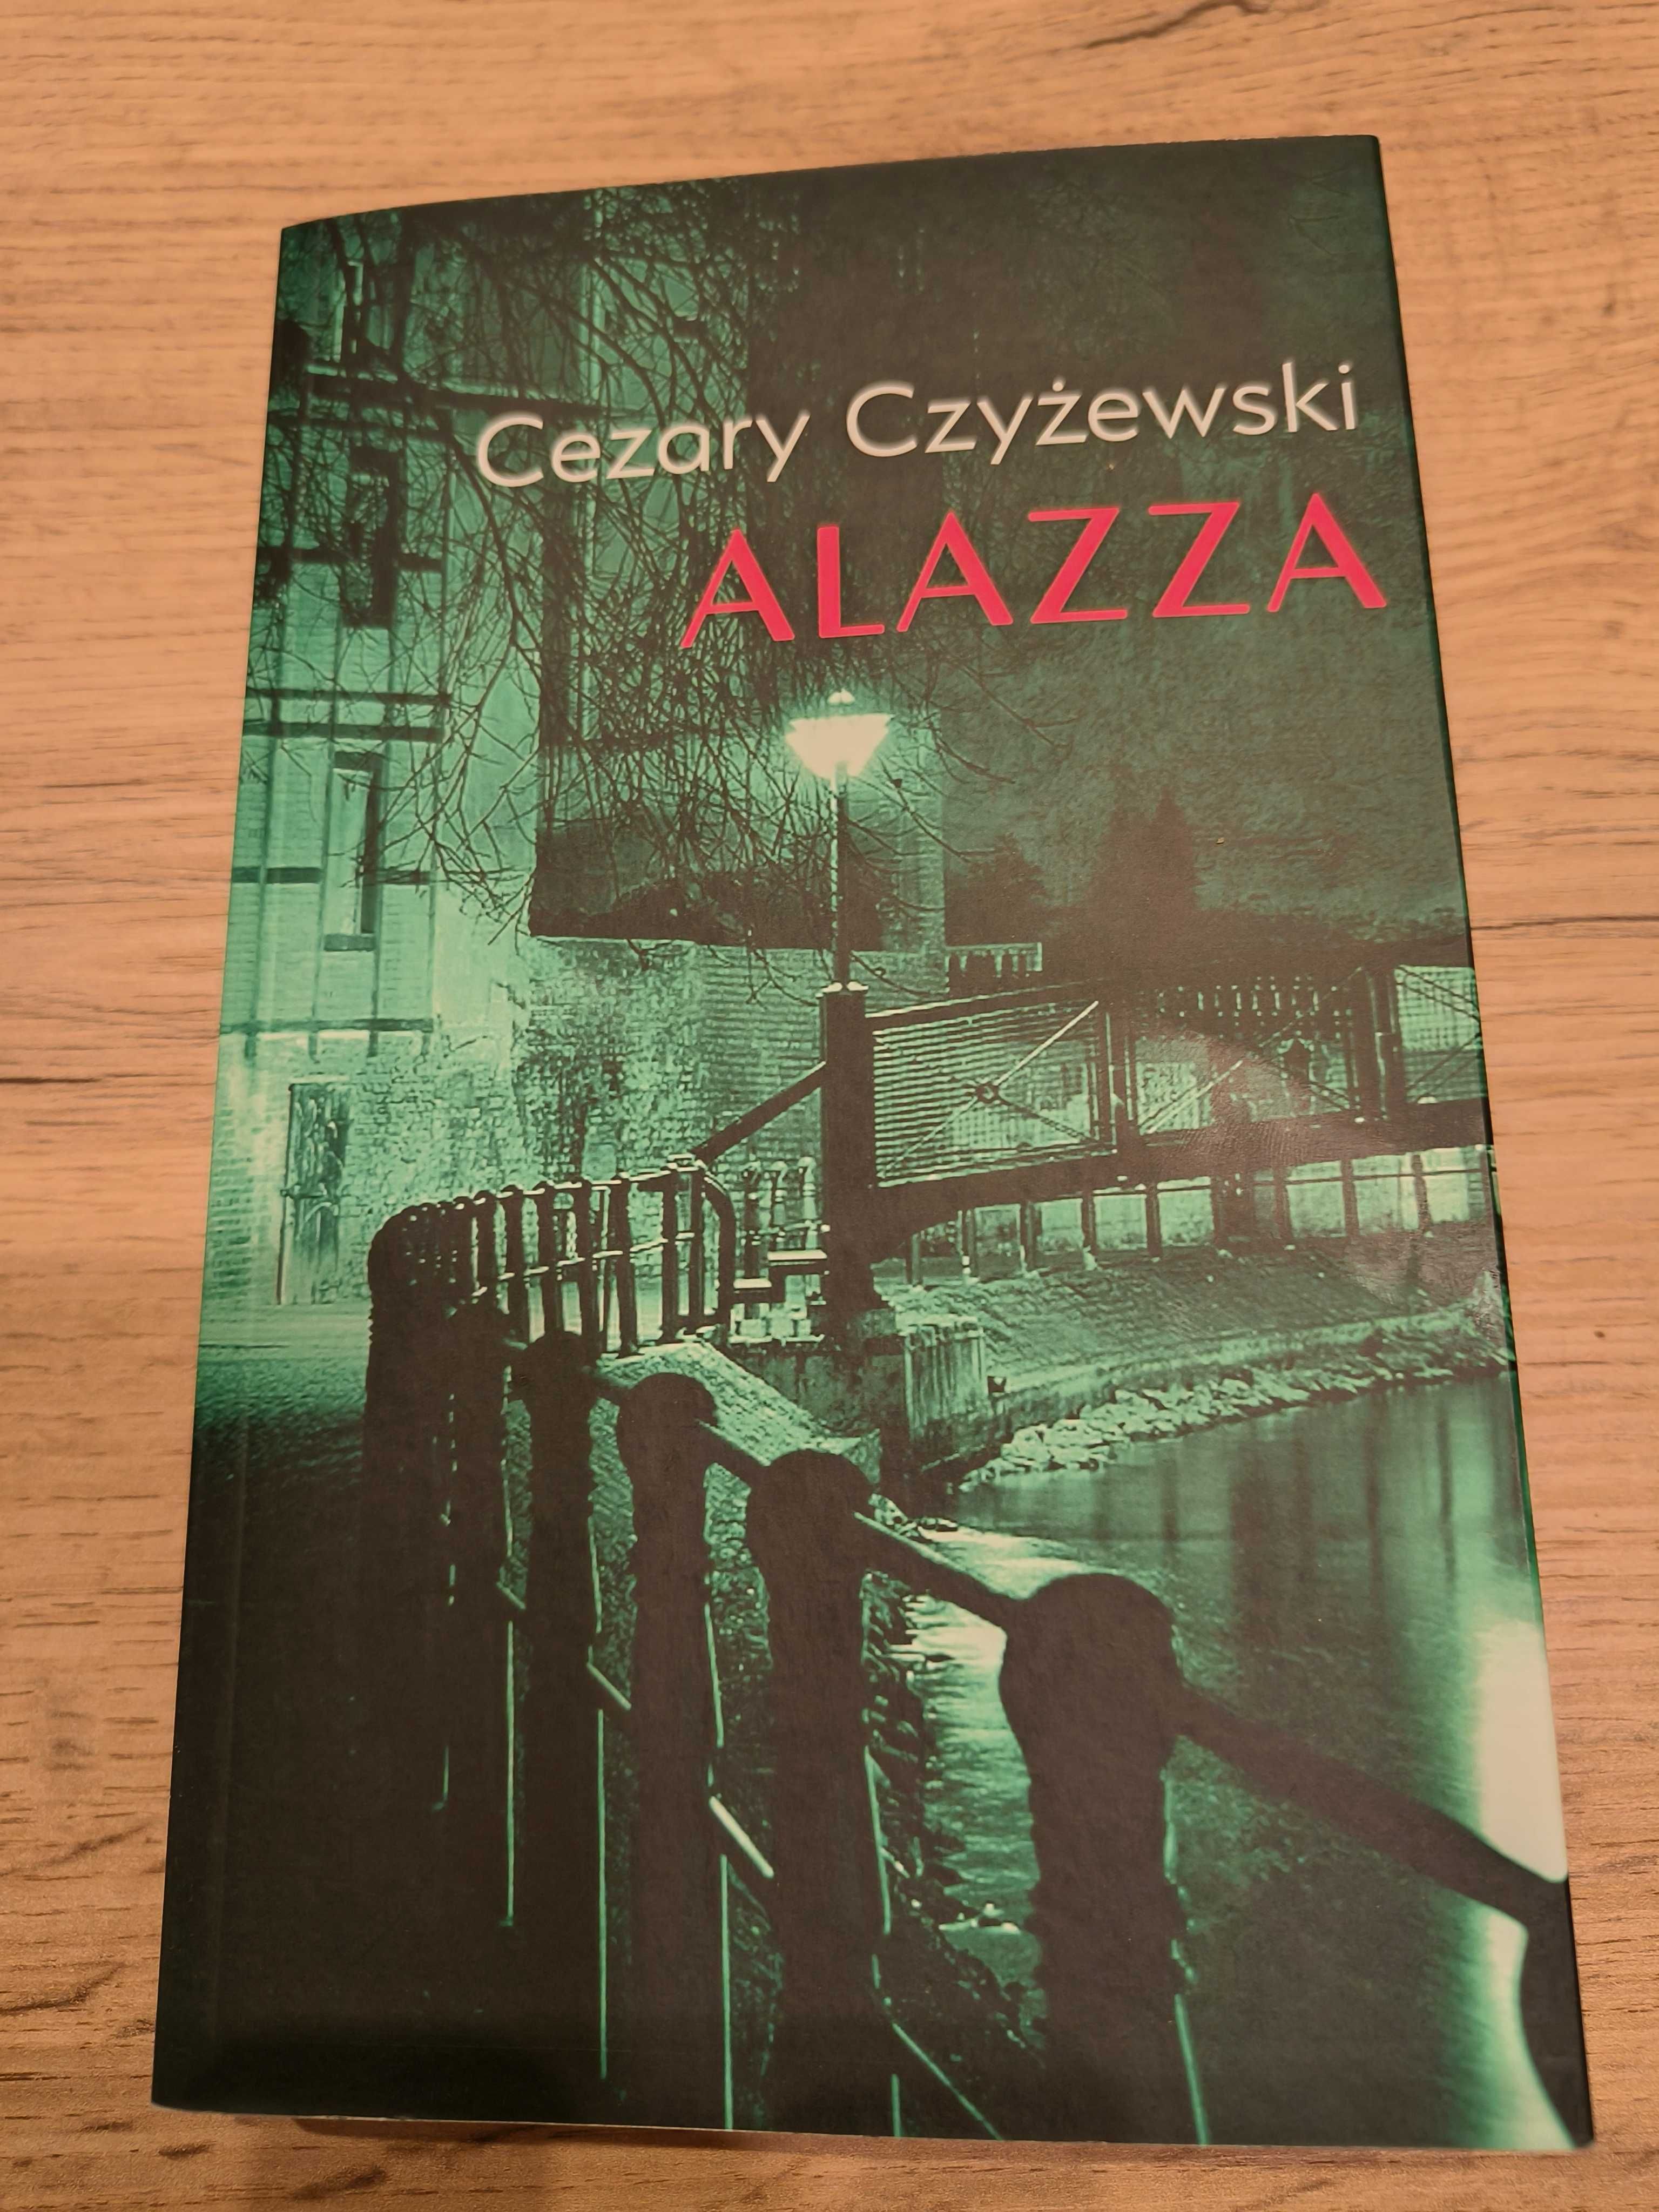 Cezary Czyżewski: Alazza + Mgły przeszłości